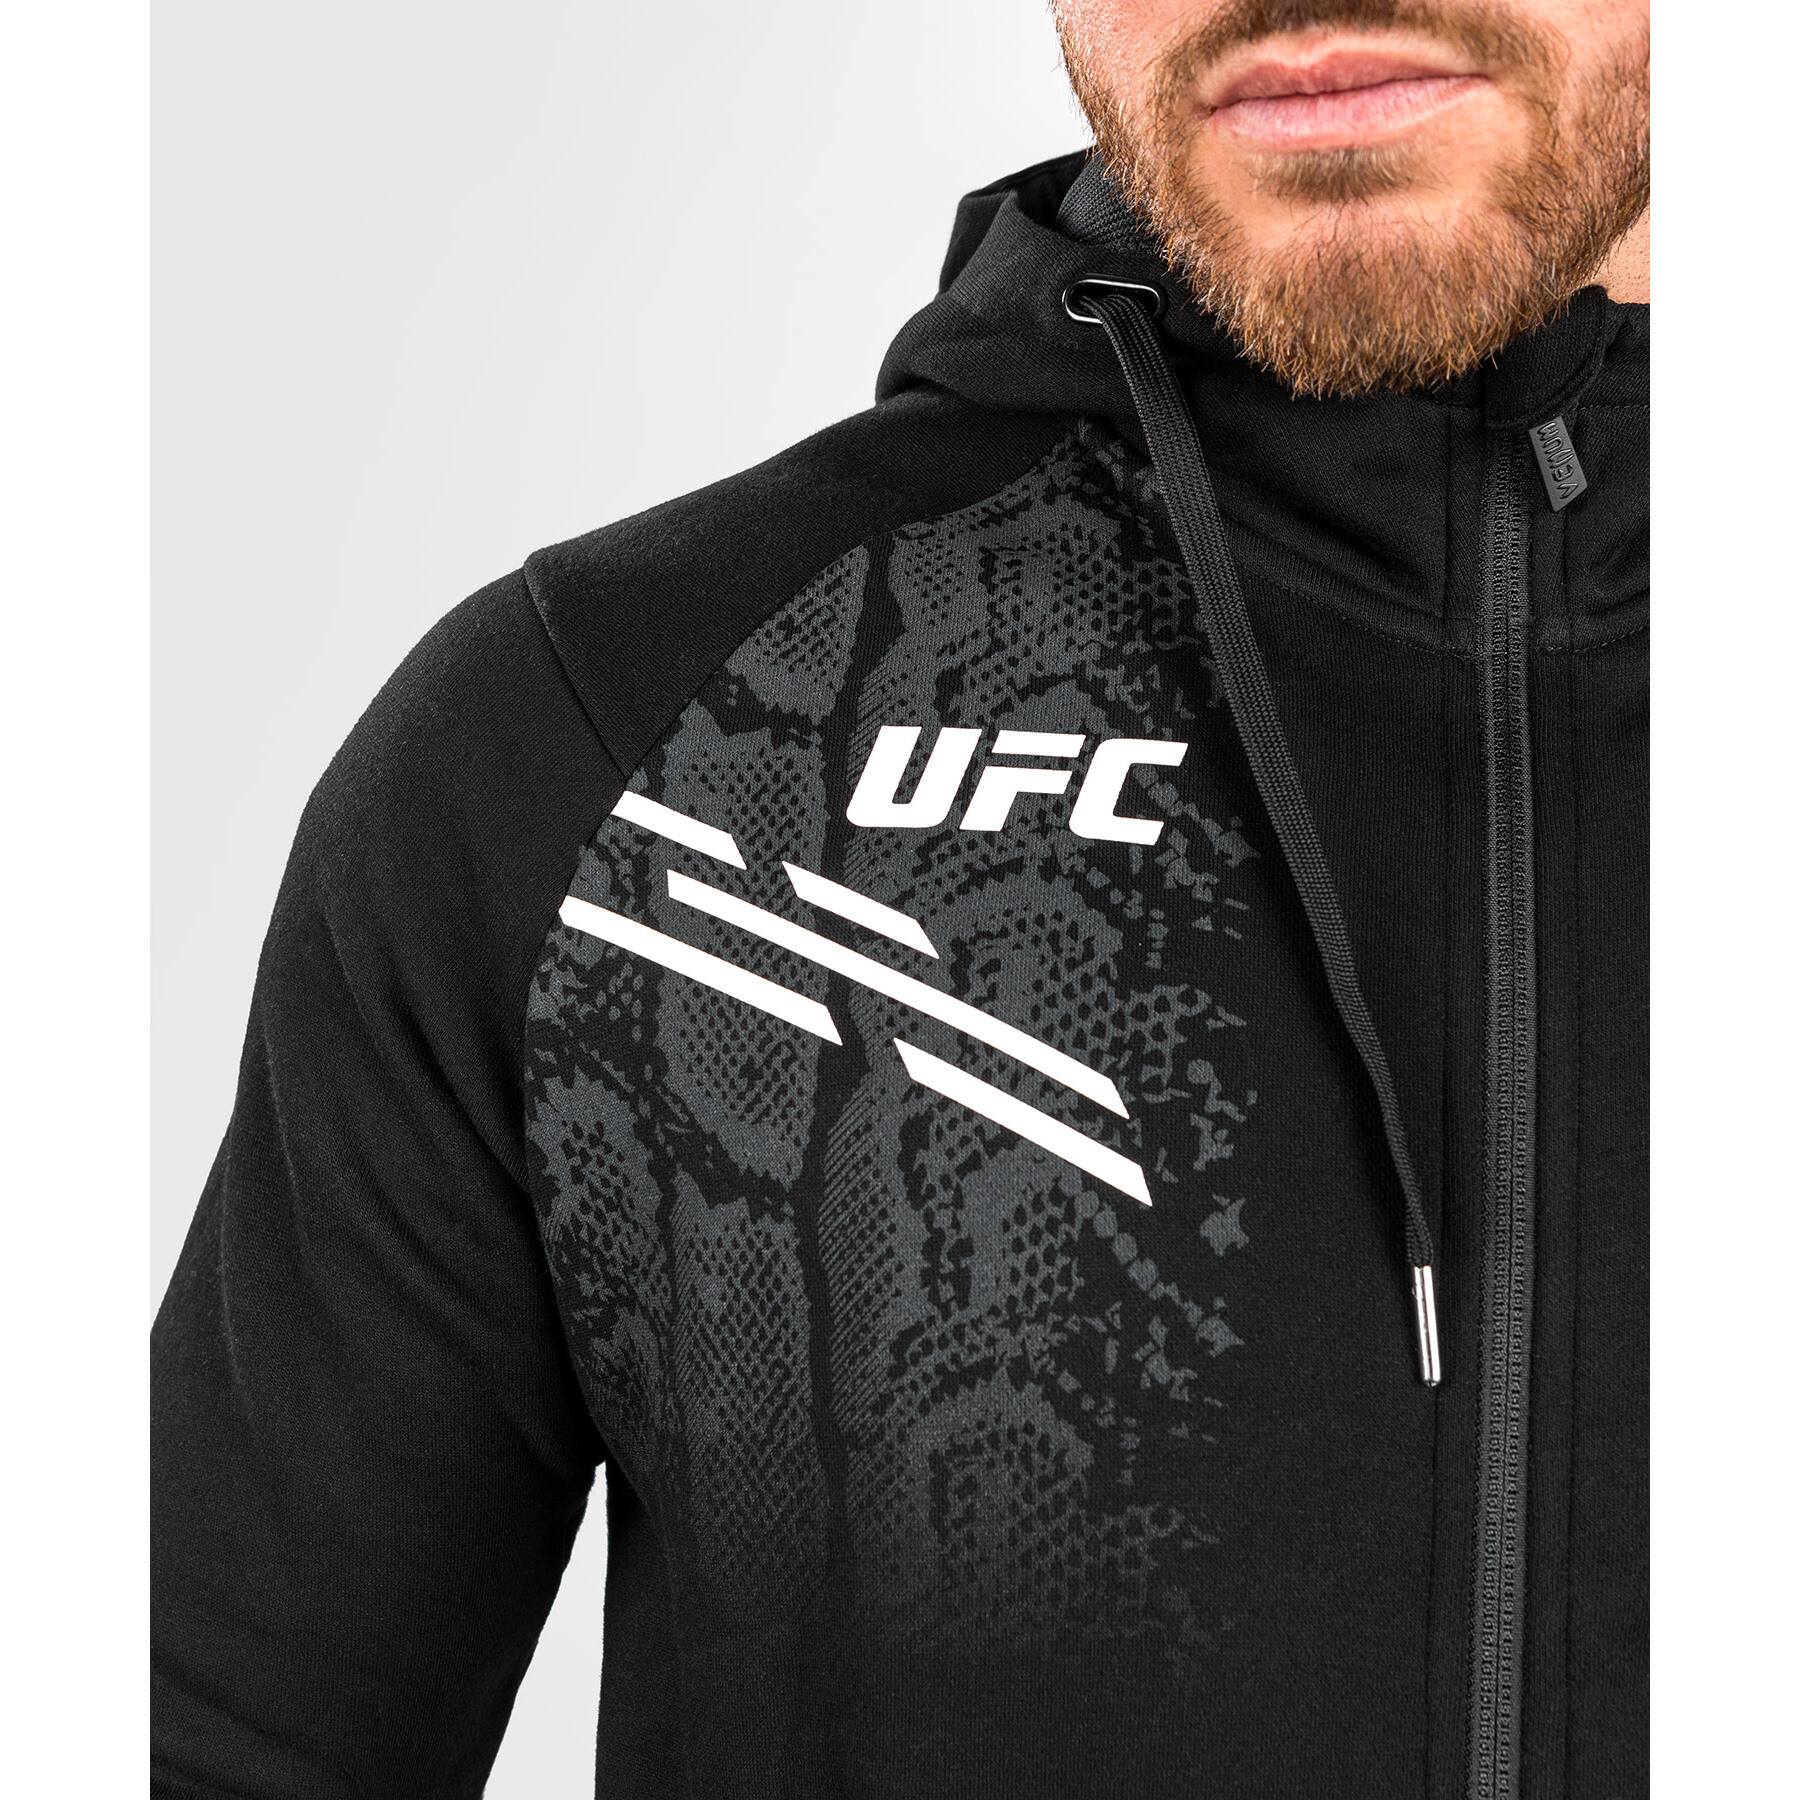 Hooded sweatshirt met rits Venum UFC Adrenaline Replica